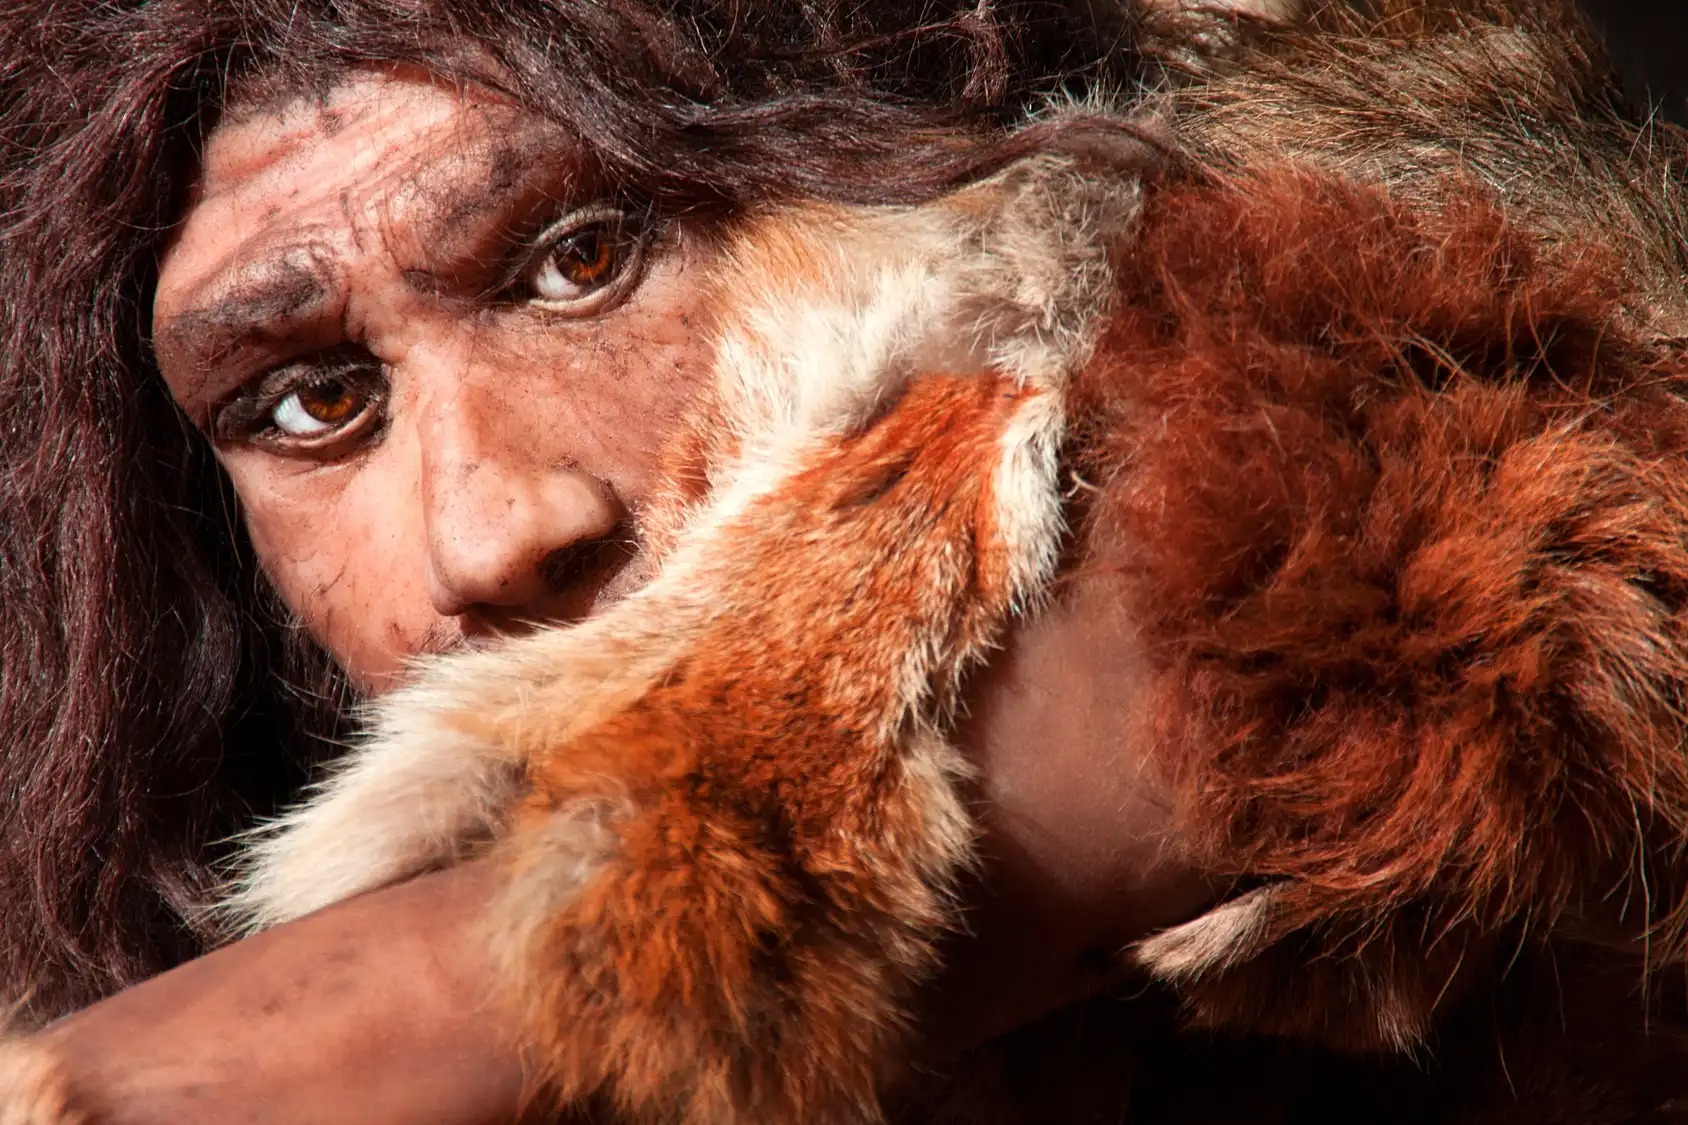 homme prehistorique - Denisova-Homo sapiens: Erfolgreiche Hybridisierung für das Immunsystem der Papua?